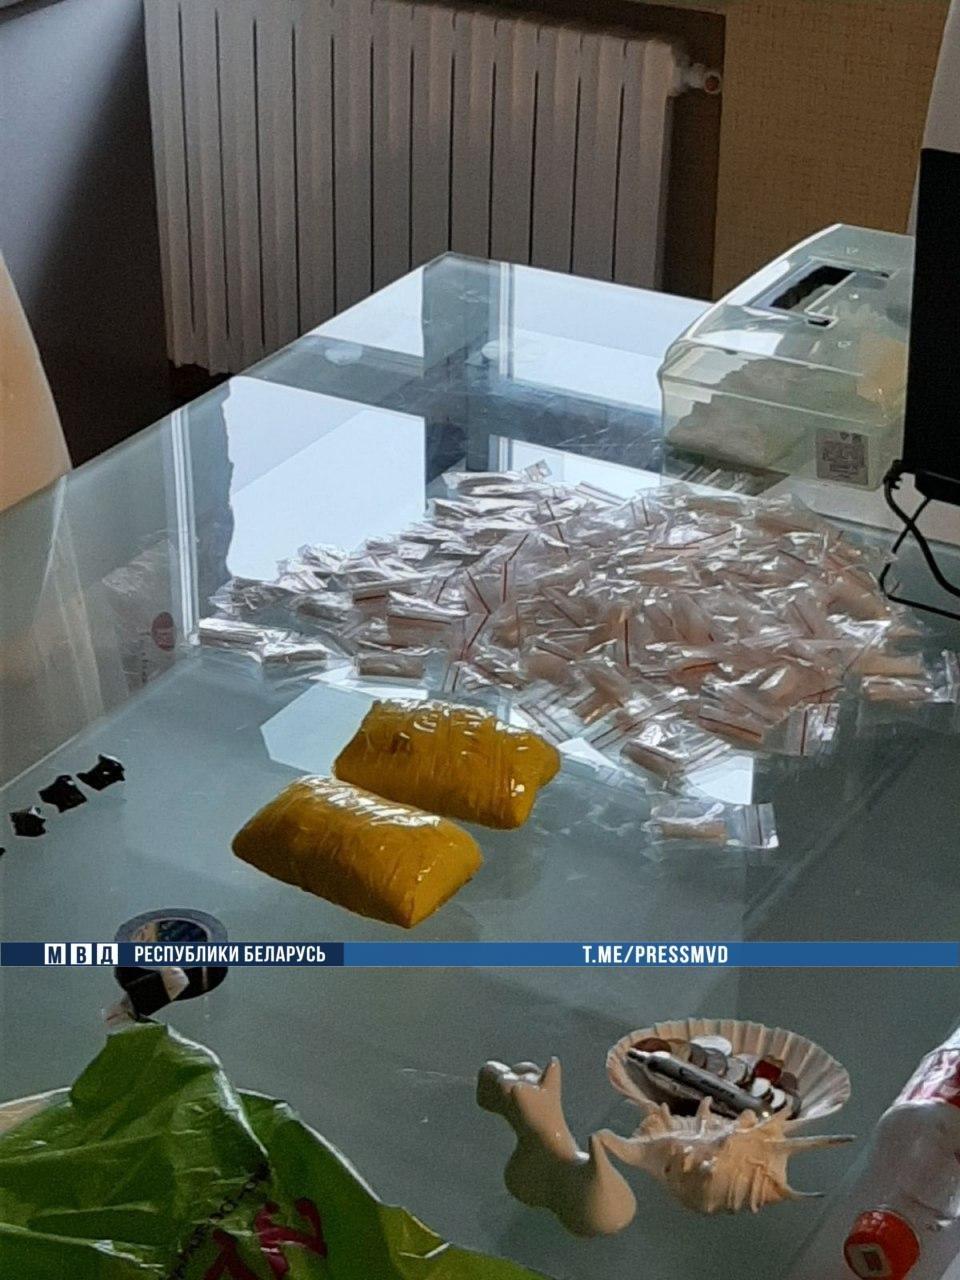 В Минске перекрыли очередной канал поставки наркотиков из России